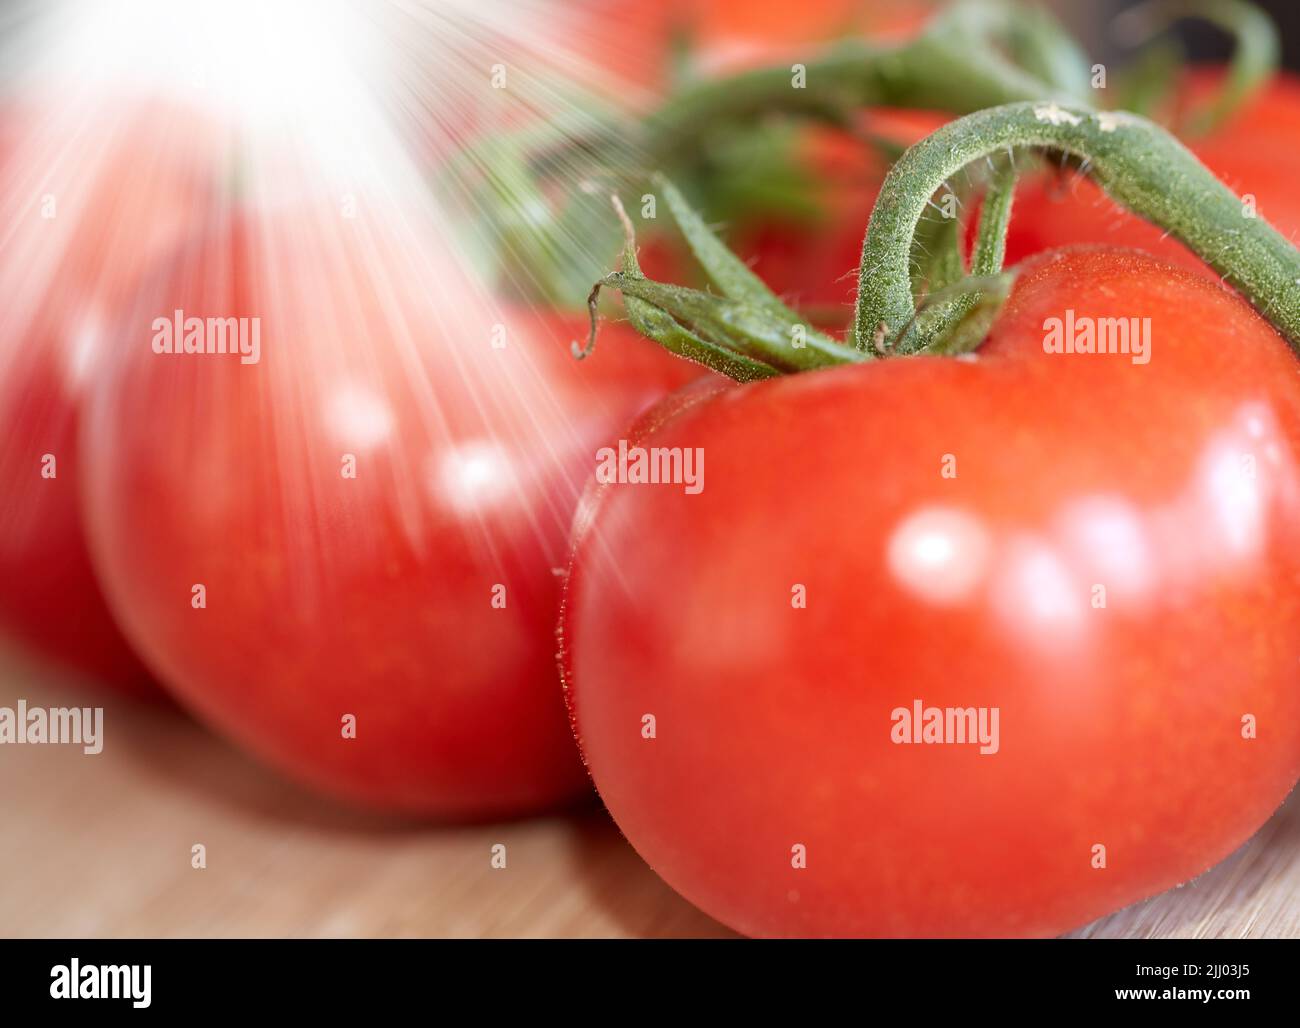 Nahaufnahme von frischen Tomaten, die mit Wasser gewaschen wurden. Gruppe von gesunden roten Tomatengemüse oder geerntetem Obst, perfekt für rohe Sommersalate, eine Mahlzeit oder als Stockfoto